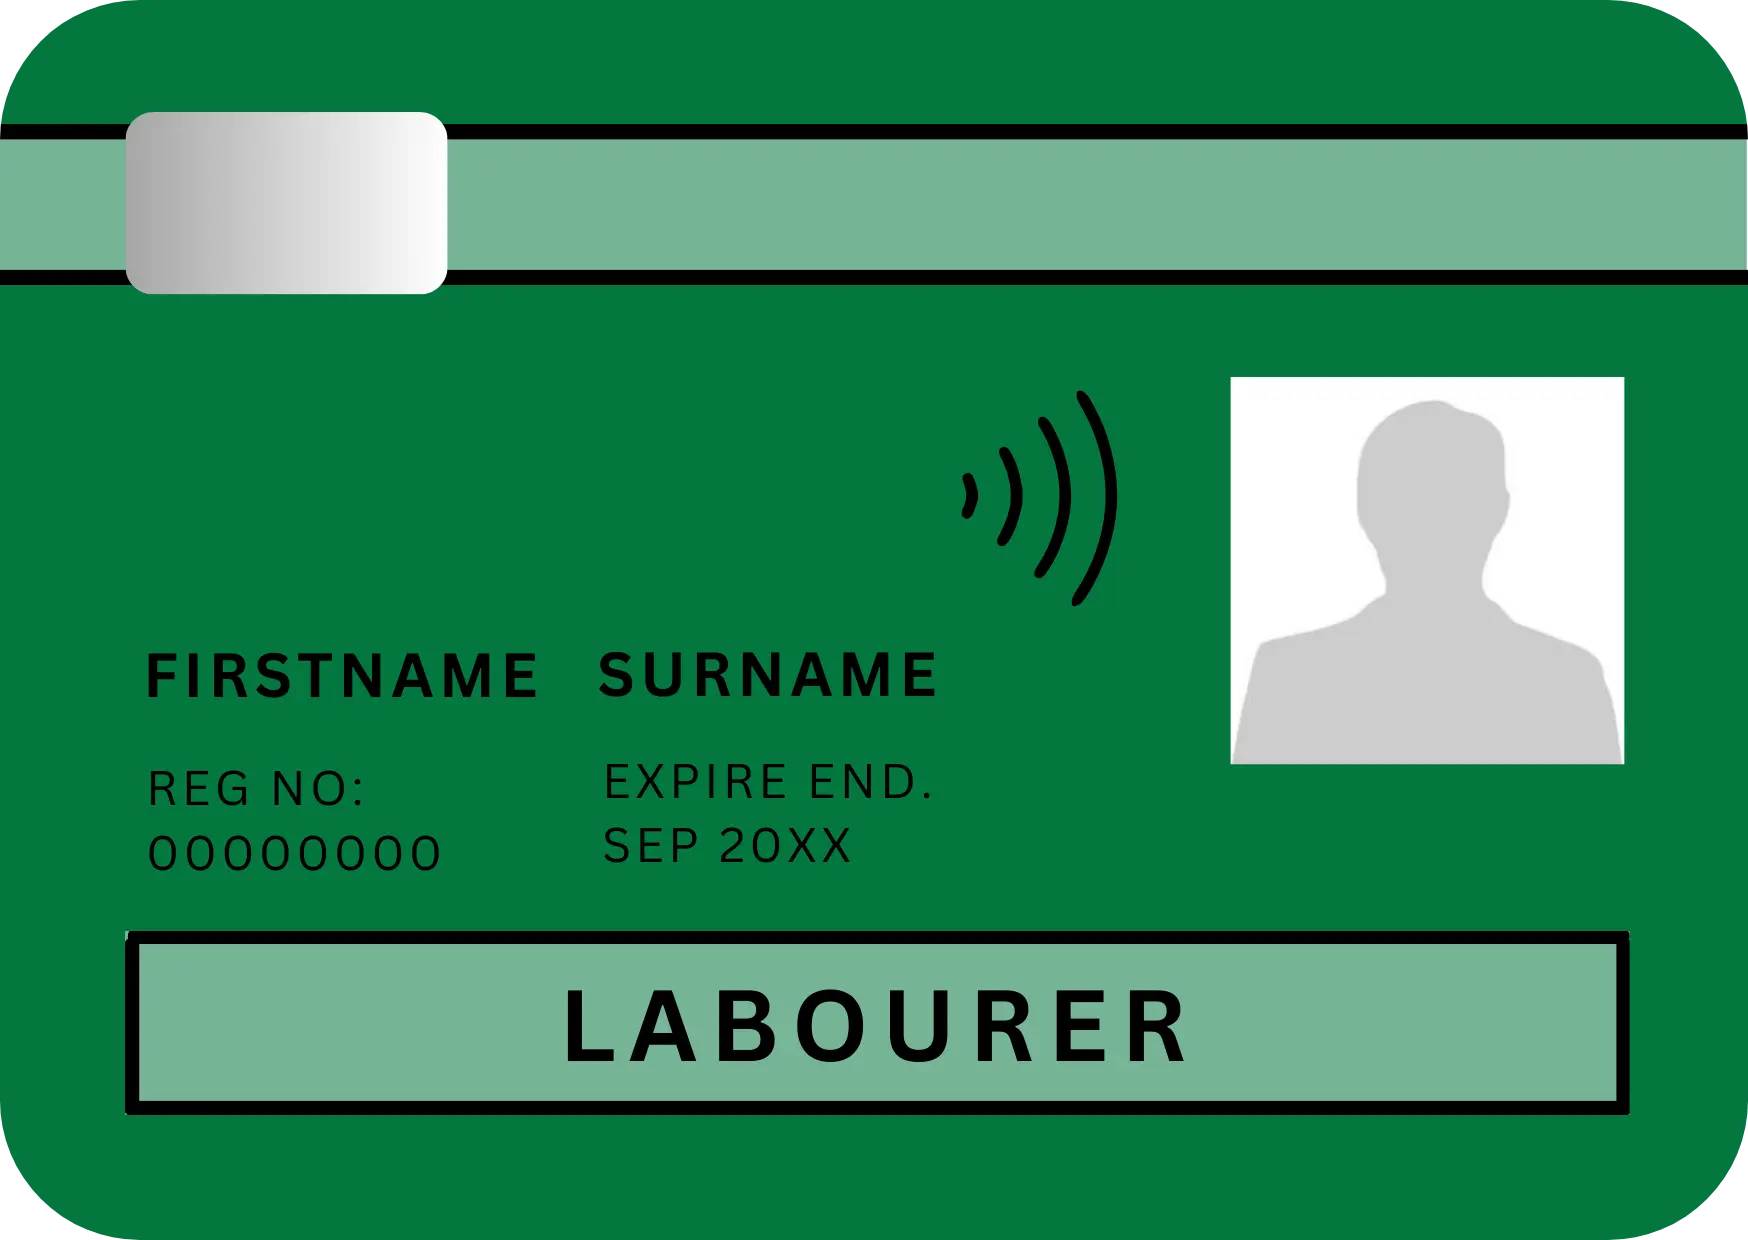 CSCS green labourer card